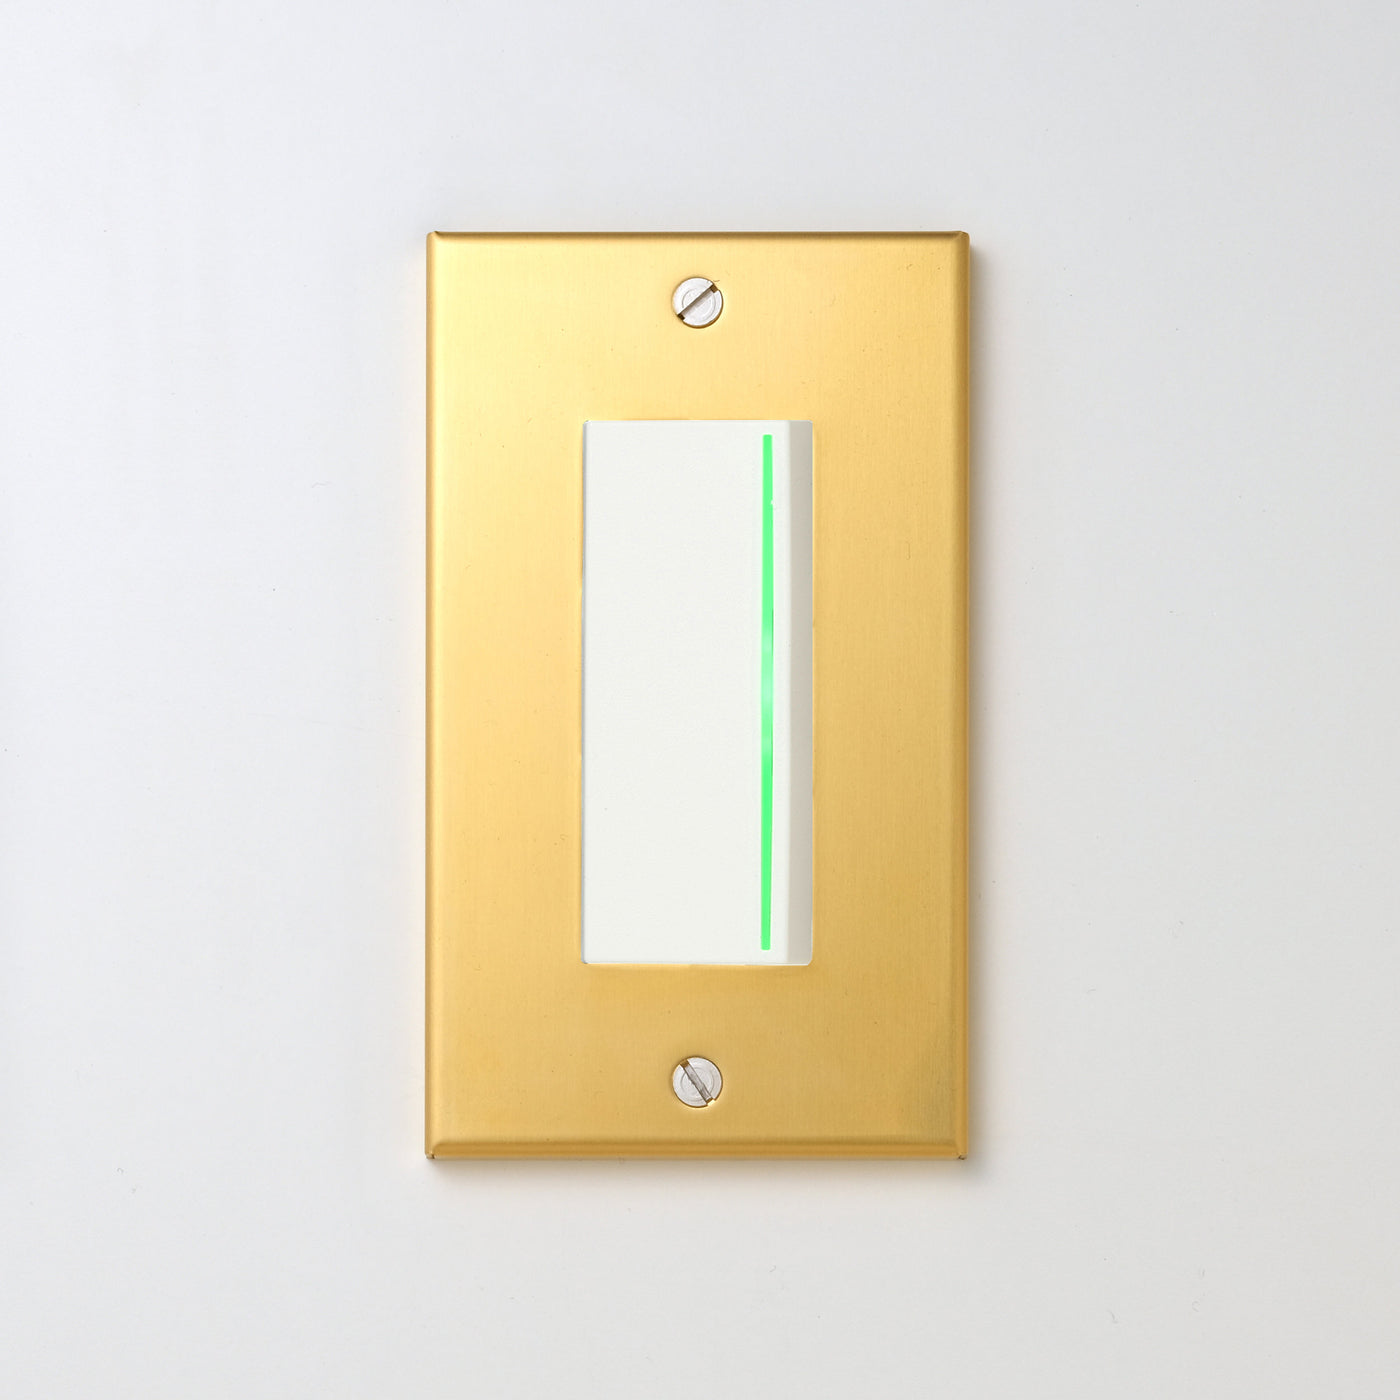 真鍮素地 プレート <br>+ NK 片切、3路ガイドランプ（グリーン）付スイッチシングル  ホワイト